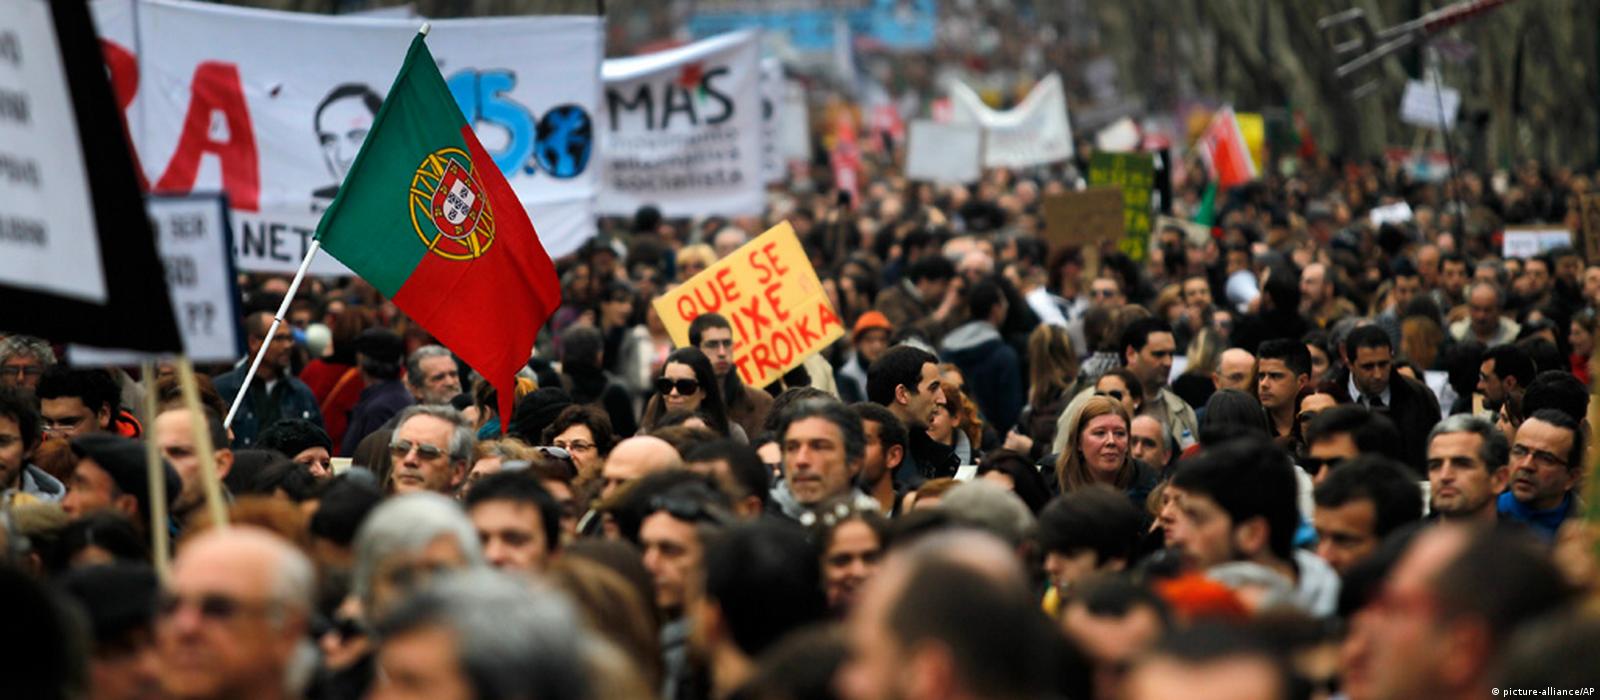 Πορτογαλία: Απεργία στον δημόσιο τομέα με αίτημα αυξήσεις μισθών